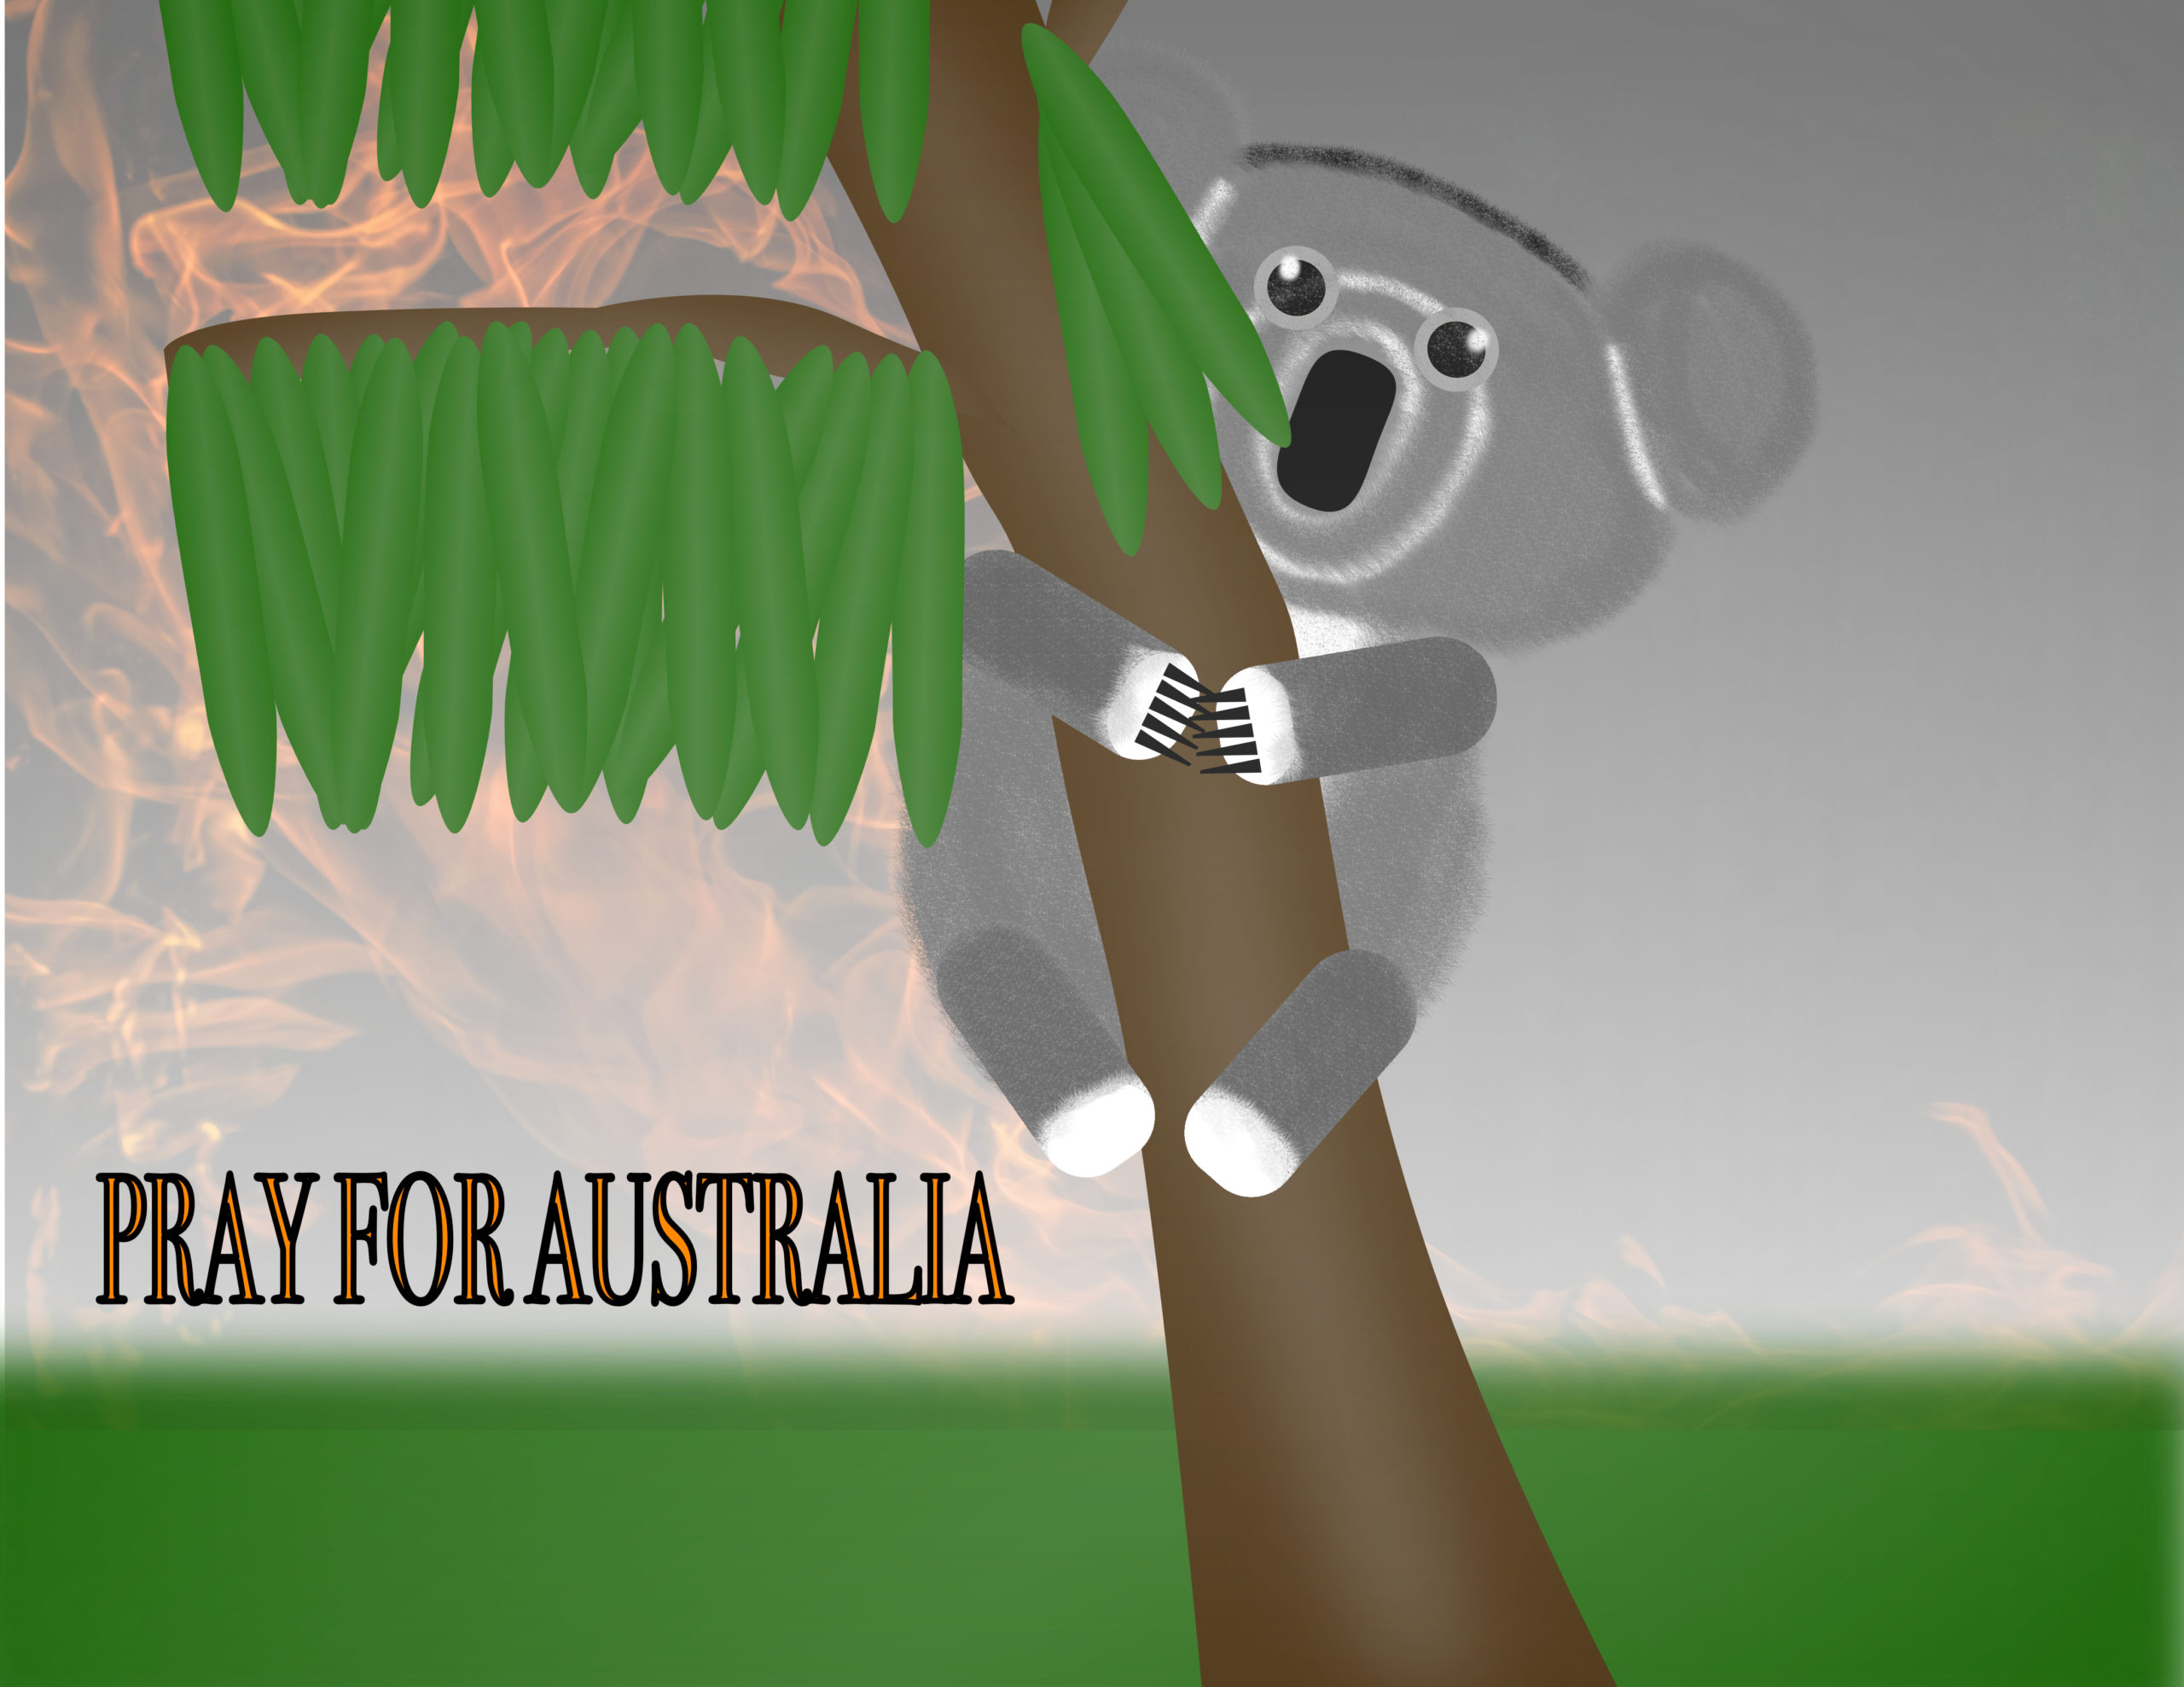 koala fire scene